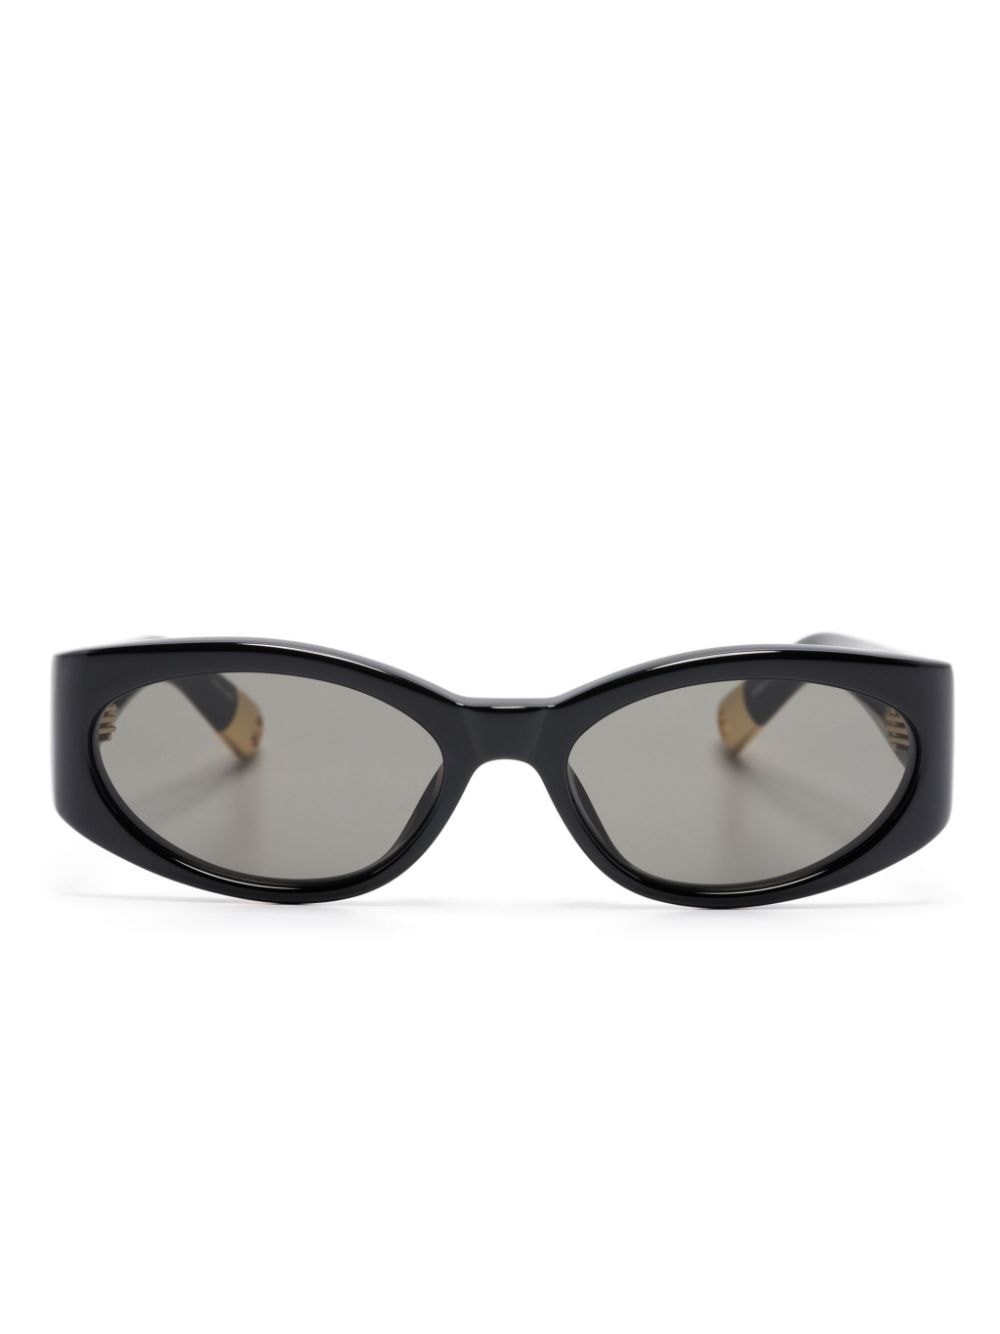 Les lunettes Ovalo oval-frame sunglasses